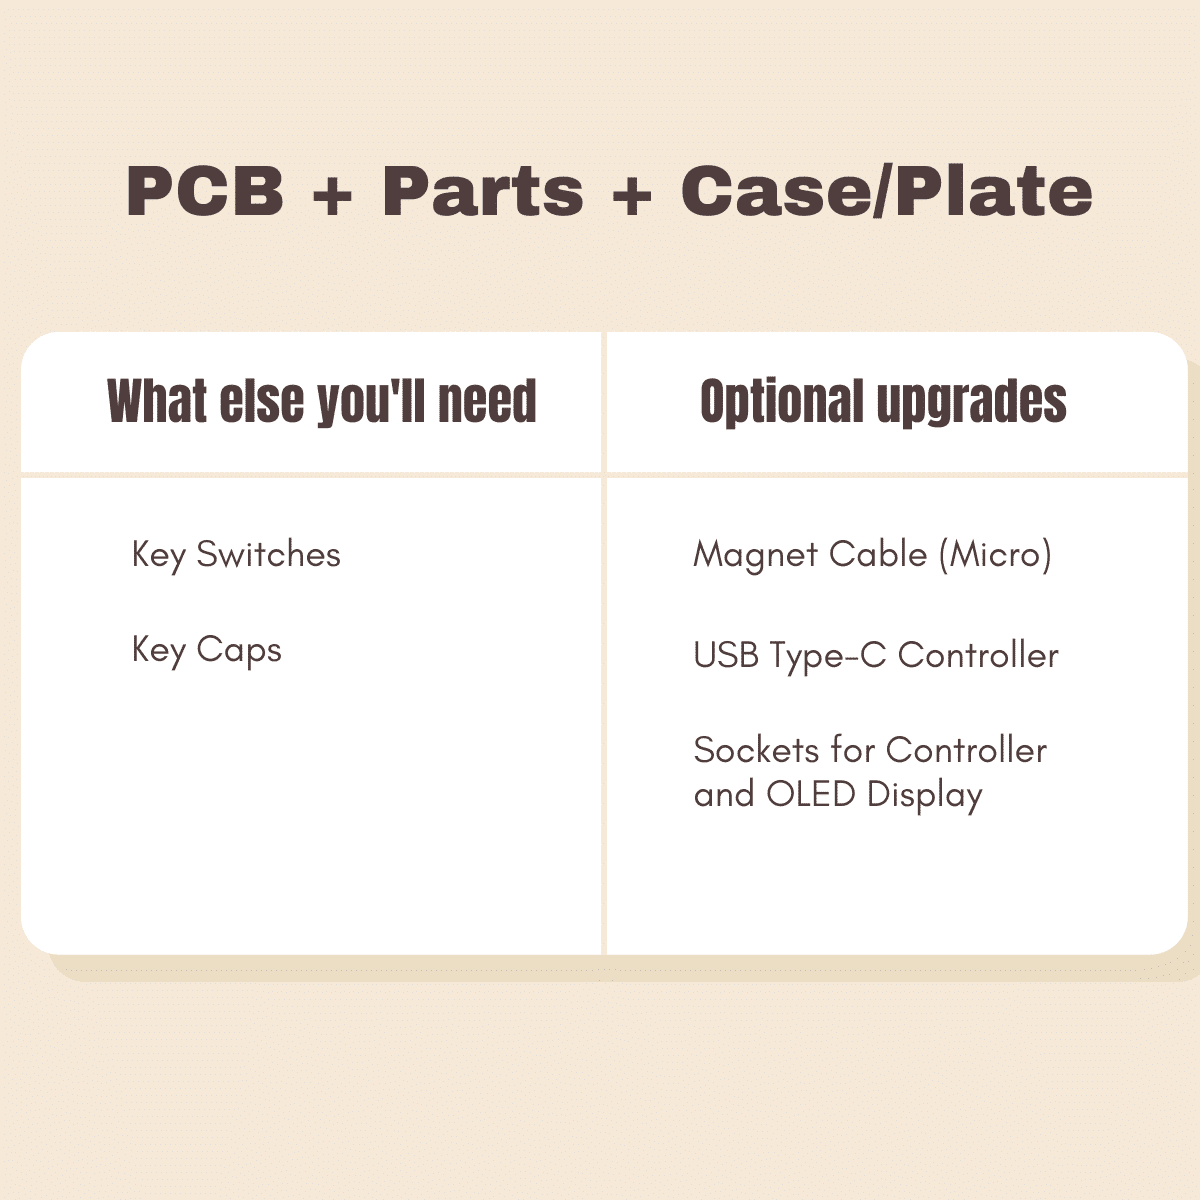 pcb+parts+case